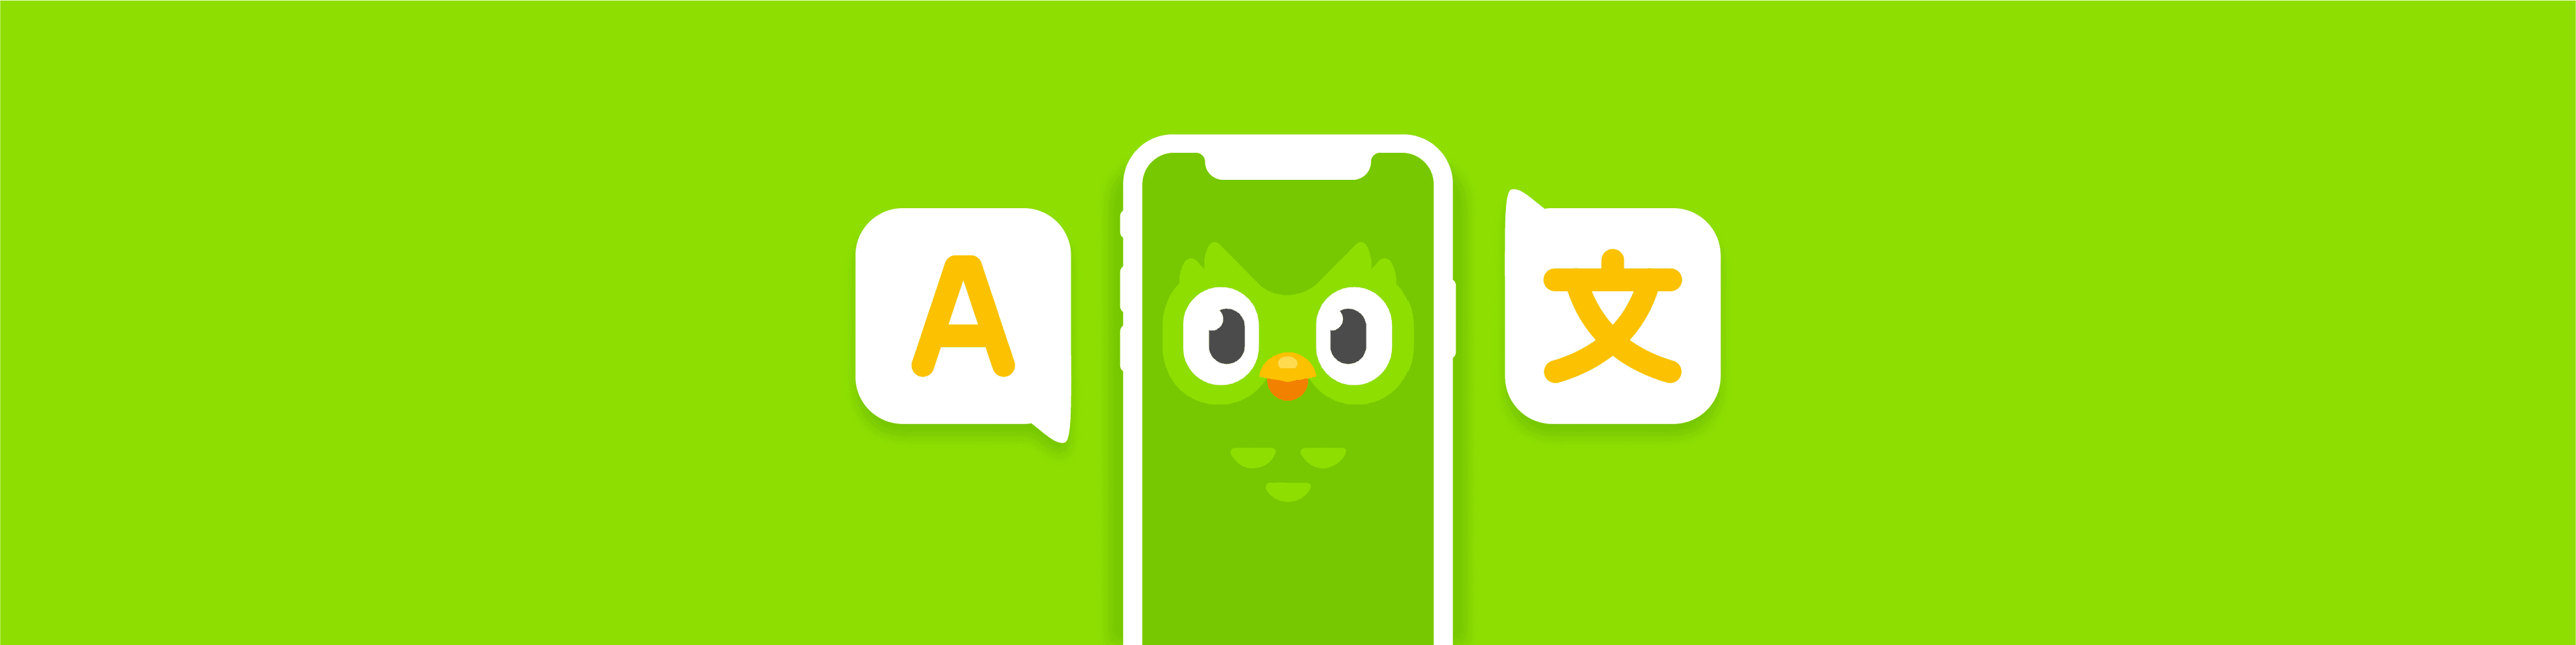 How to Create a Language Learning App Like Duolingo?